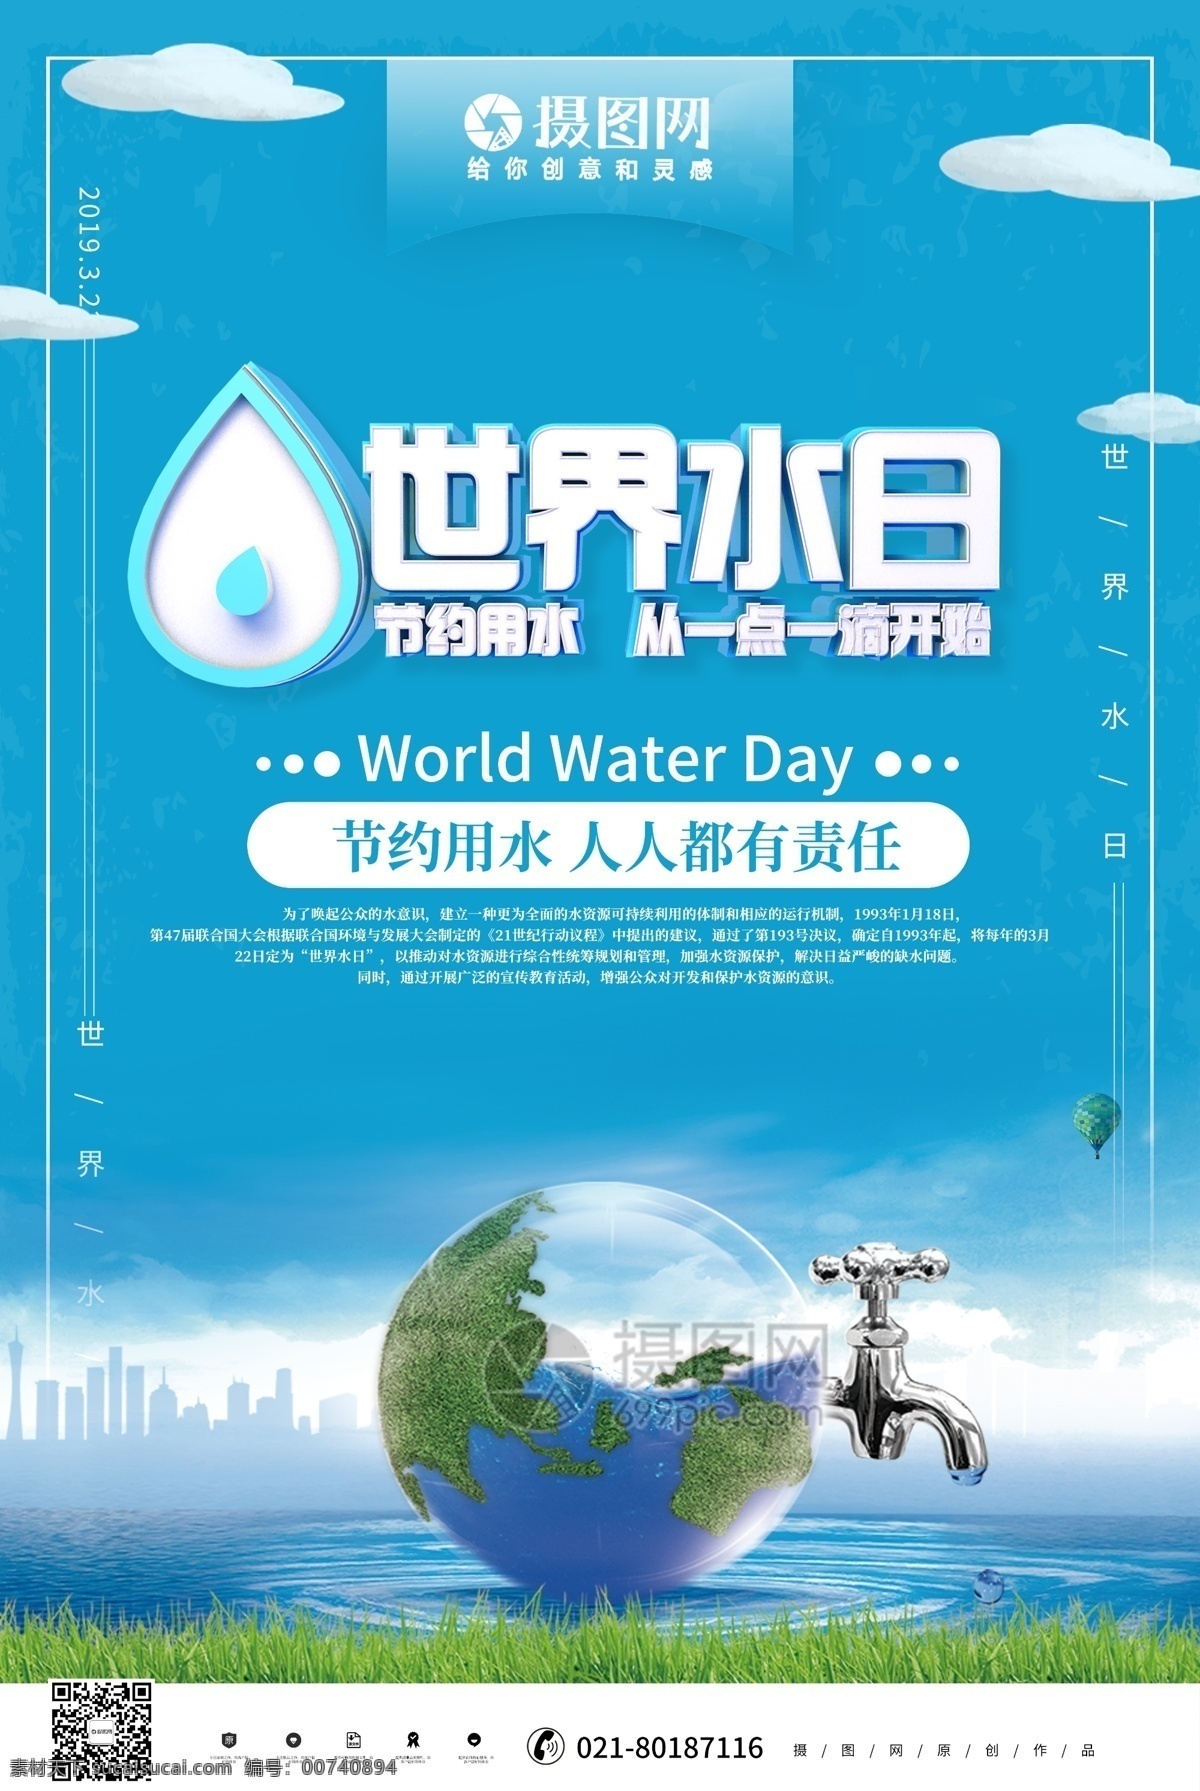 蓝色 立体 世界 水日 公益 宣传海报 3月22日 世界水日 缺水 爱水海报 惜水 干涸地球 保护水资源 节约用水 公益海报 宣传